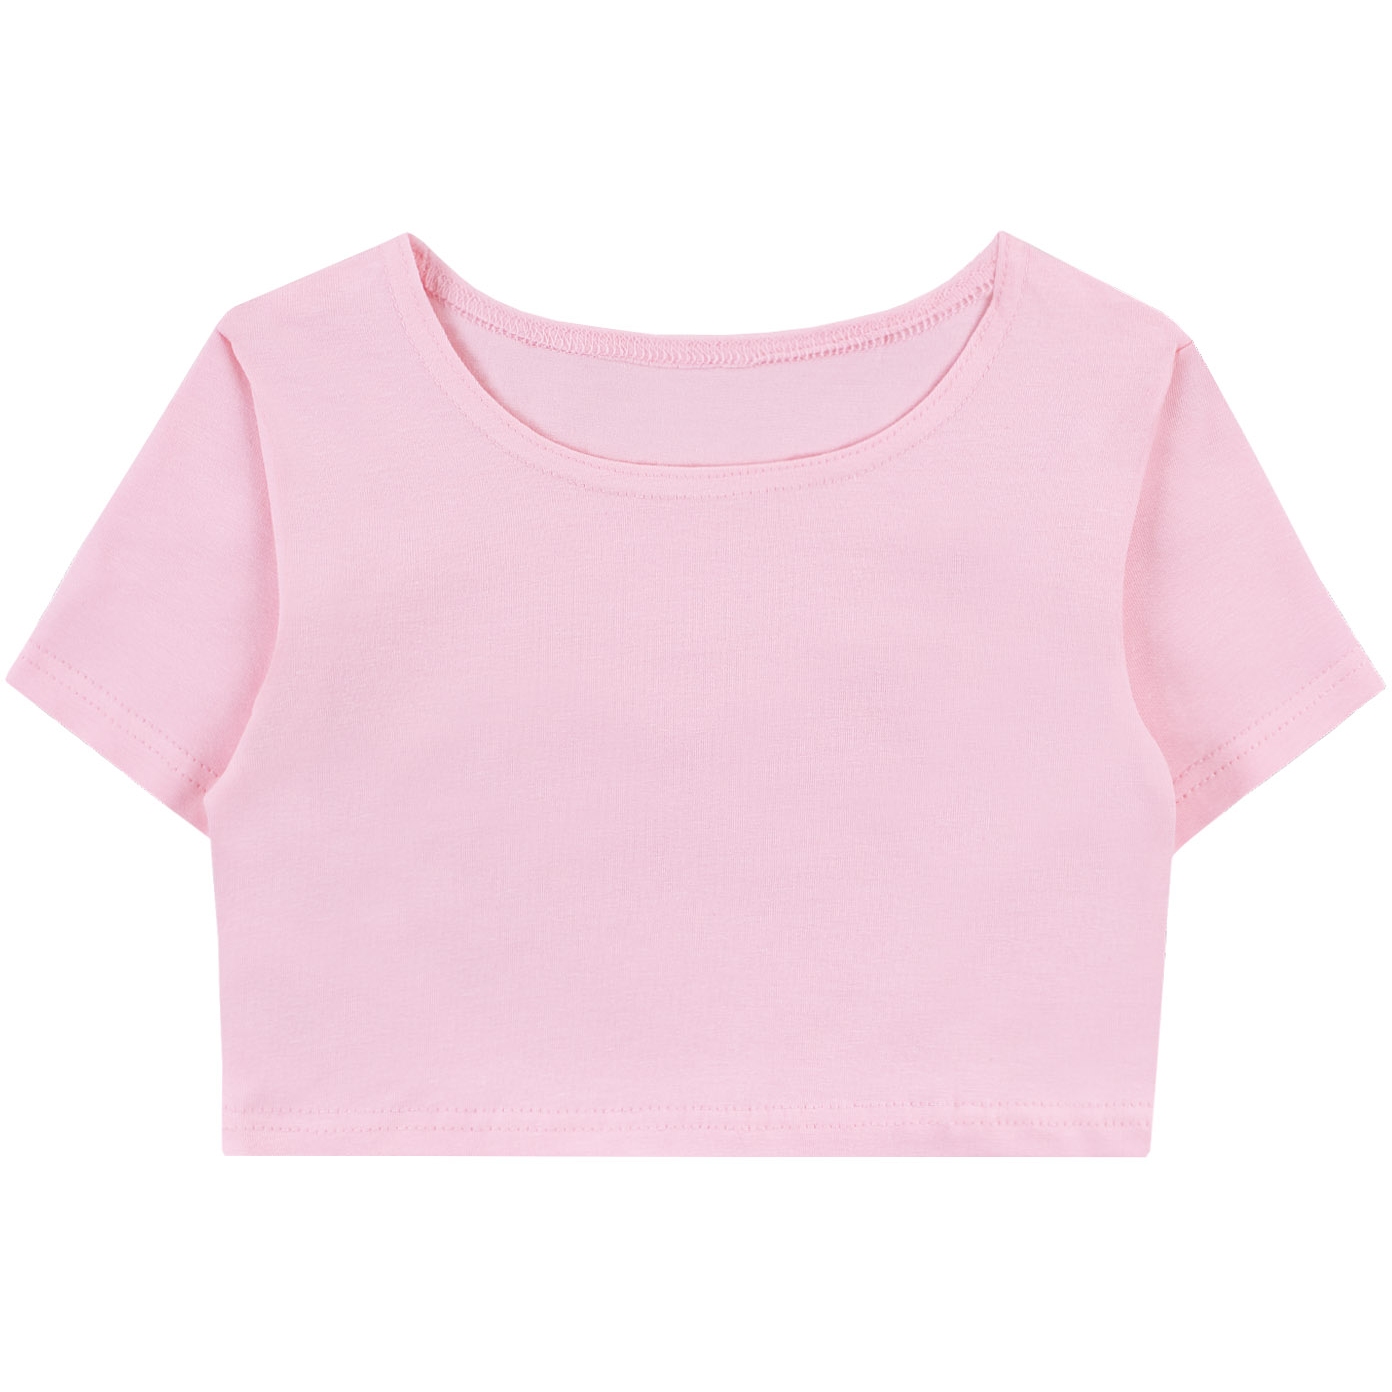 Топ (футболка) 140-146 Розовый (76) 1431100115